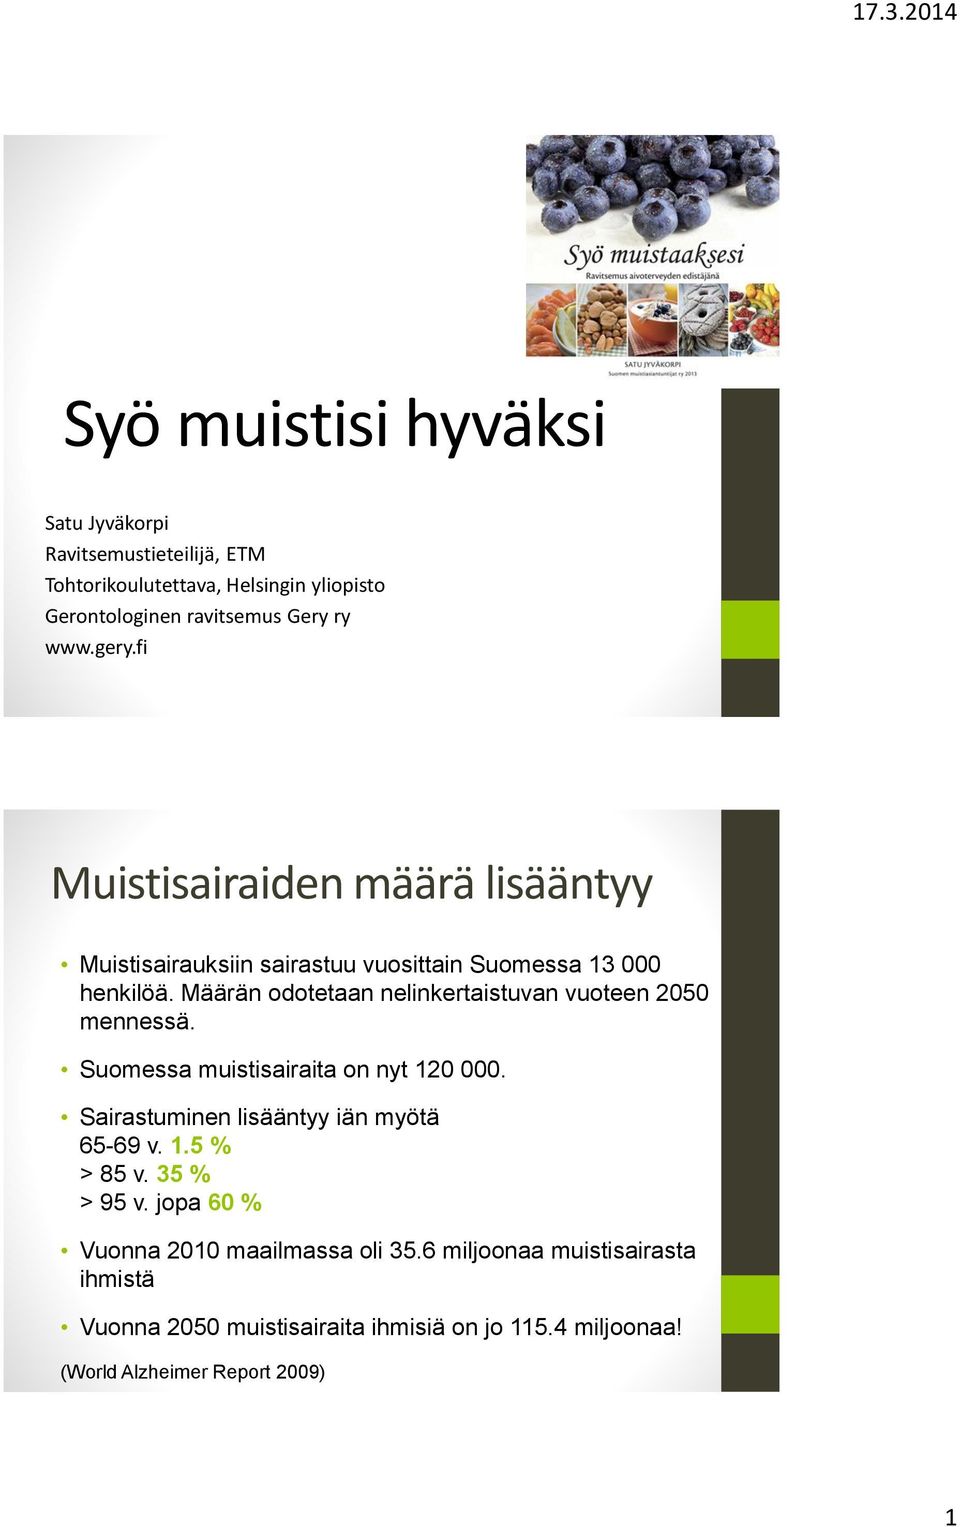 Määrän odotetaan nelinkertaistuvan vuoteen 2050 mennessä. Suomessa muistisairaita on nyt 120 000. Sairastuminen lisääntyy iän myötä 65-69 v. 1.5 % > 85 v.